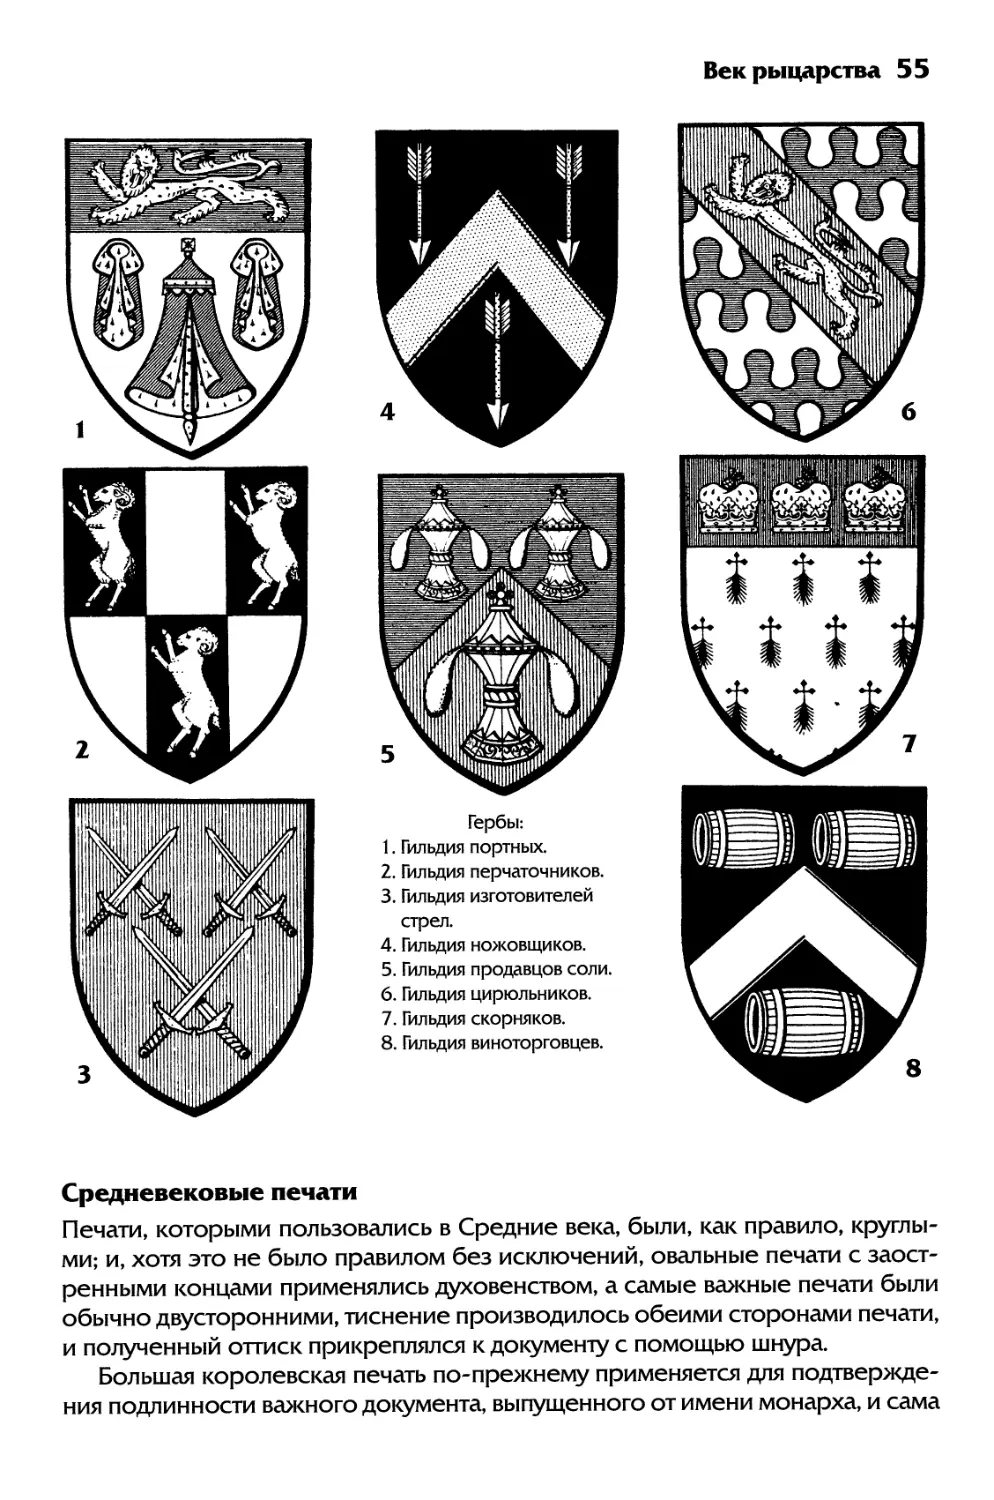 Средневековые печати